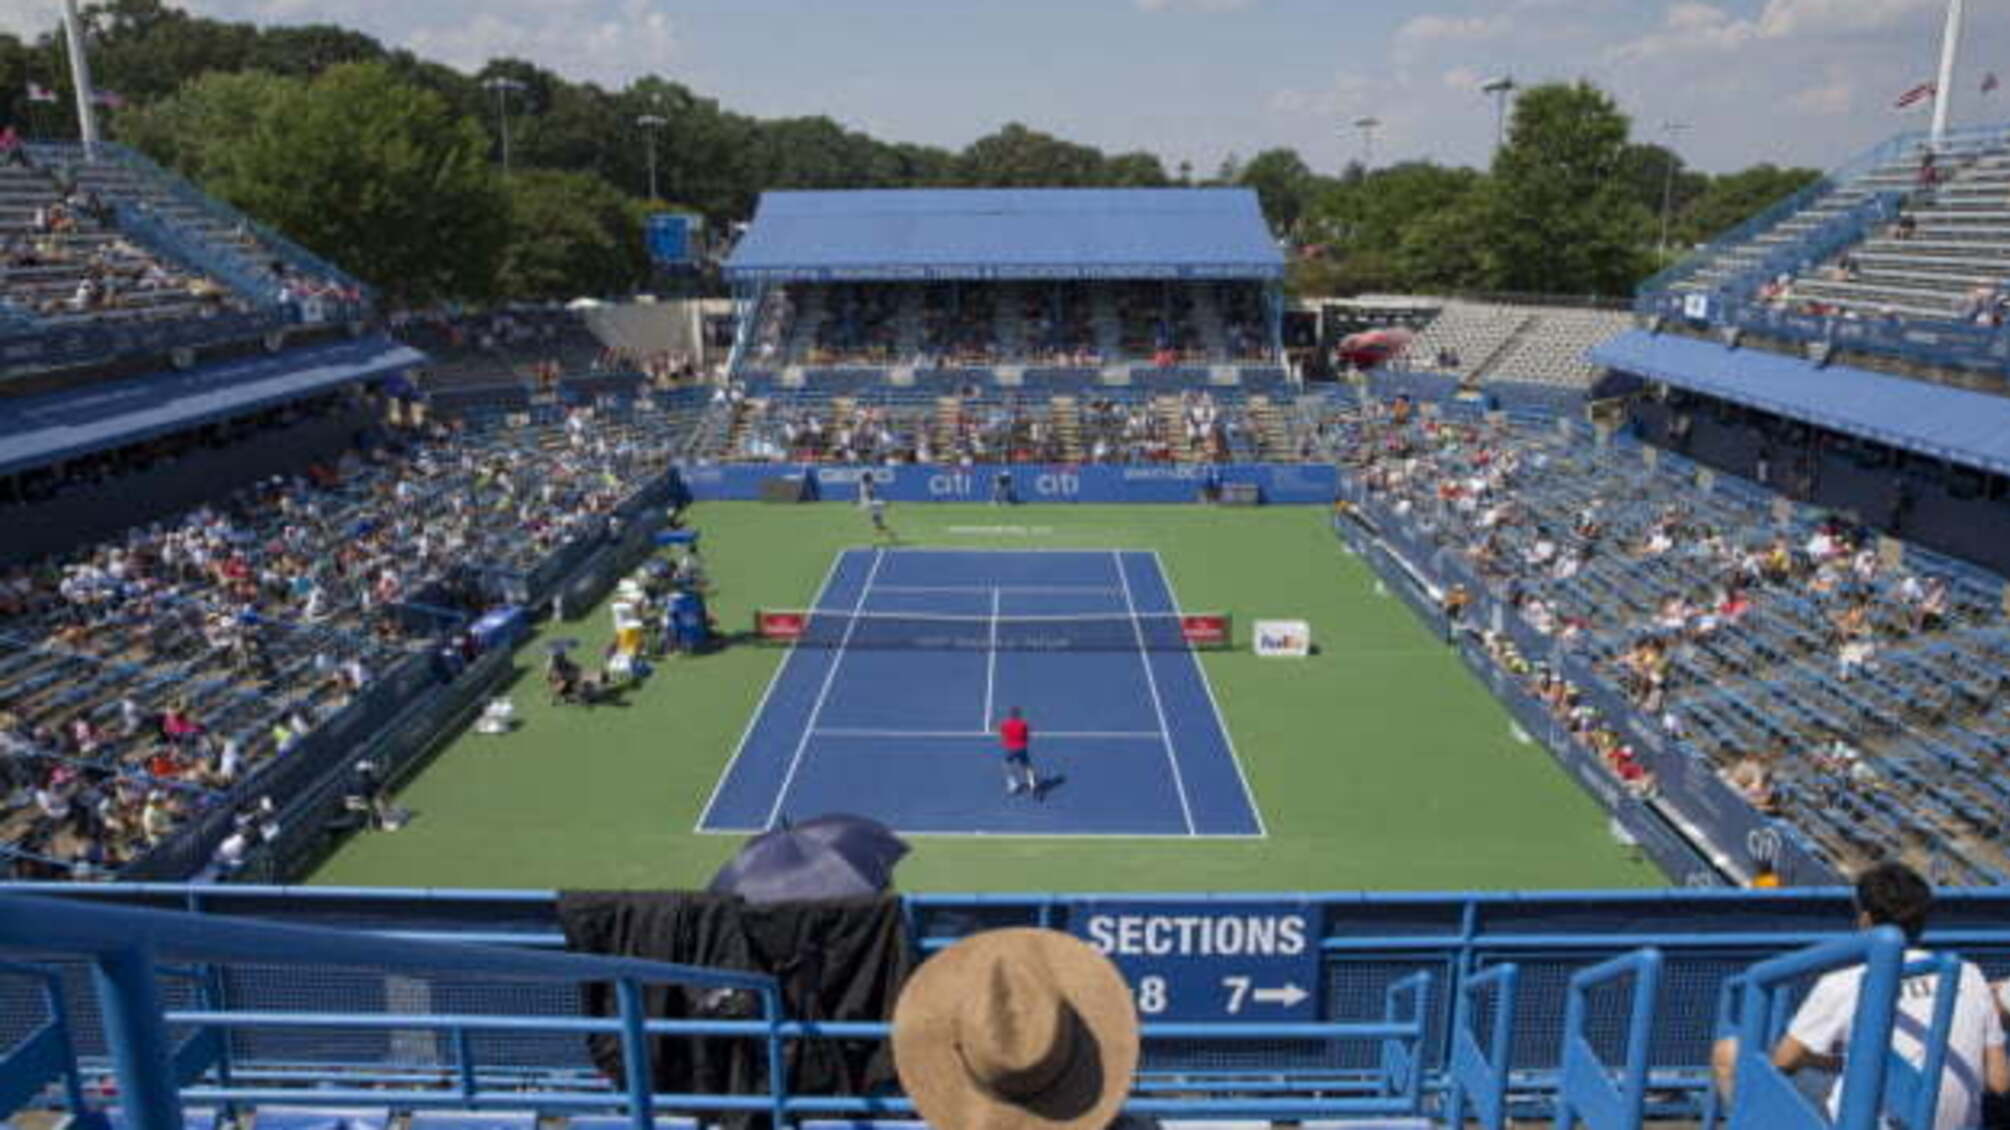 Aсоціація тенісистів-професіоналів скасувала турнір у Вашингтоні